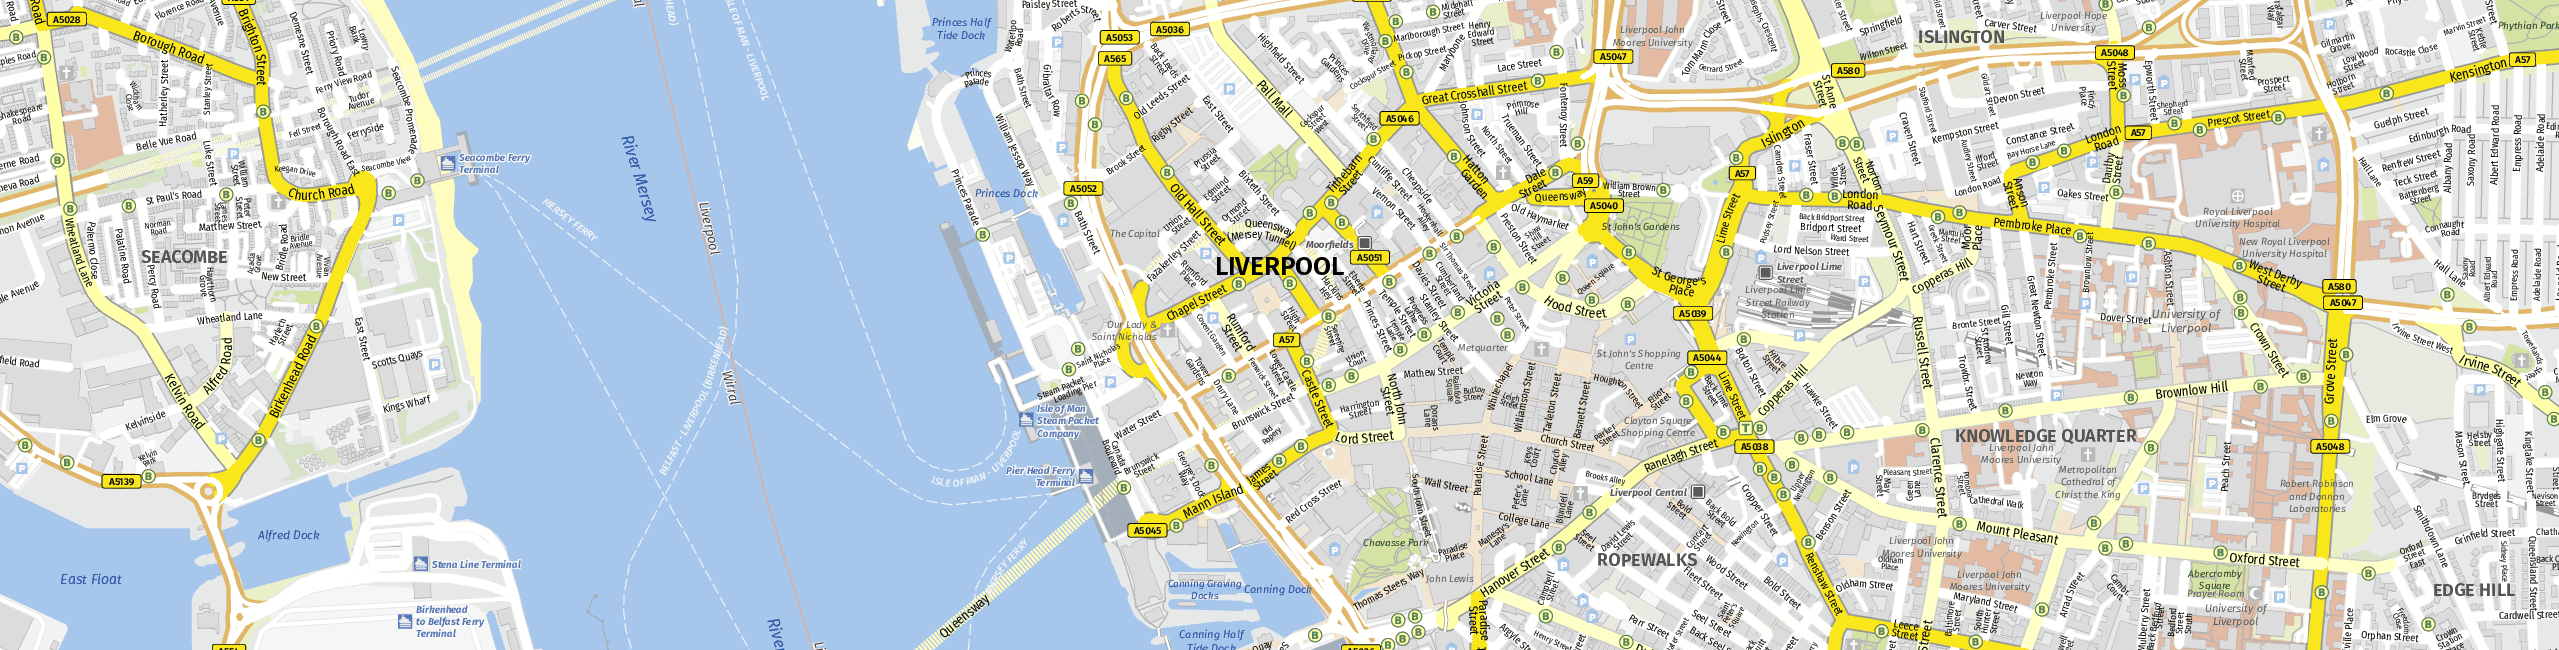 Stadtplan Liverpool zum Downloaden.